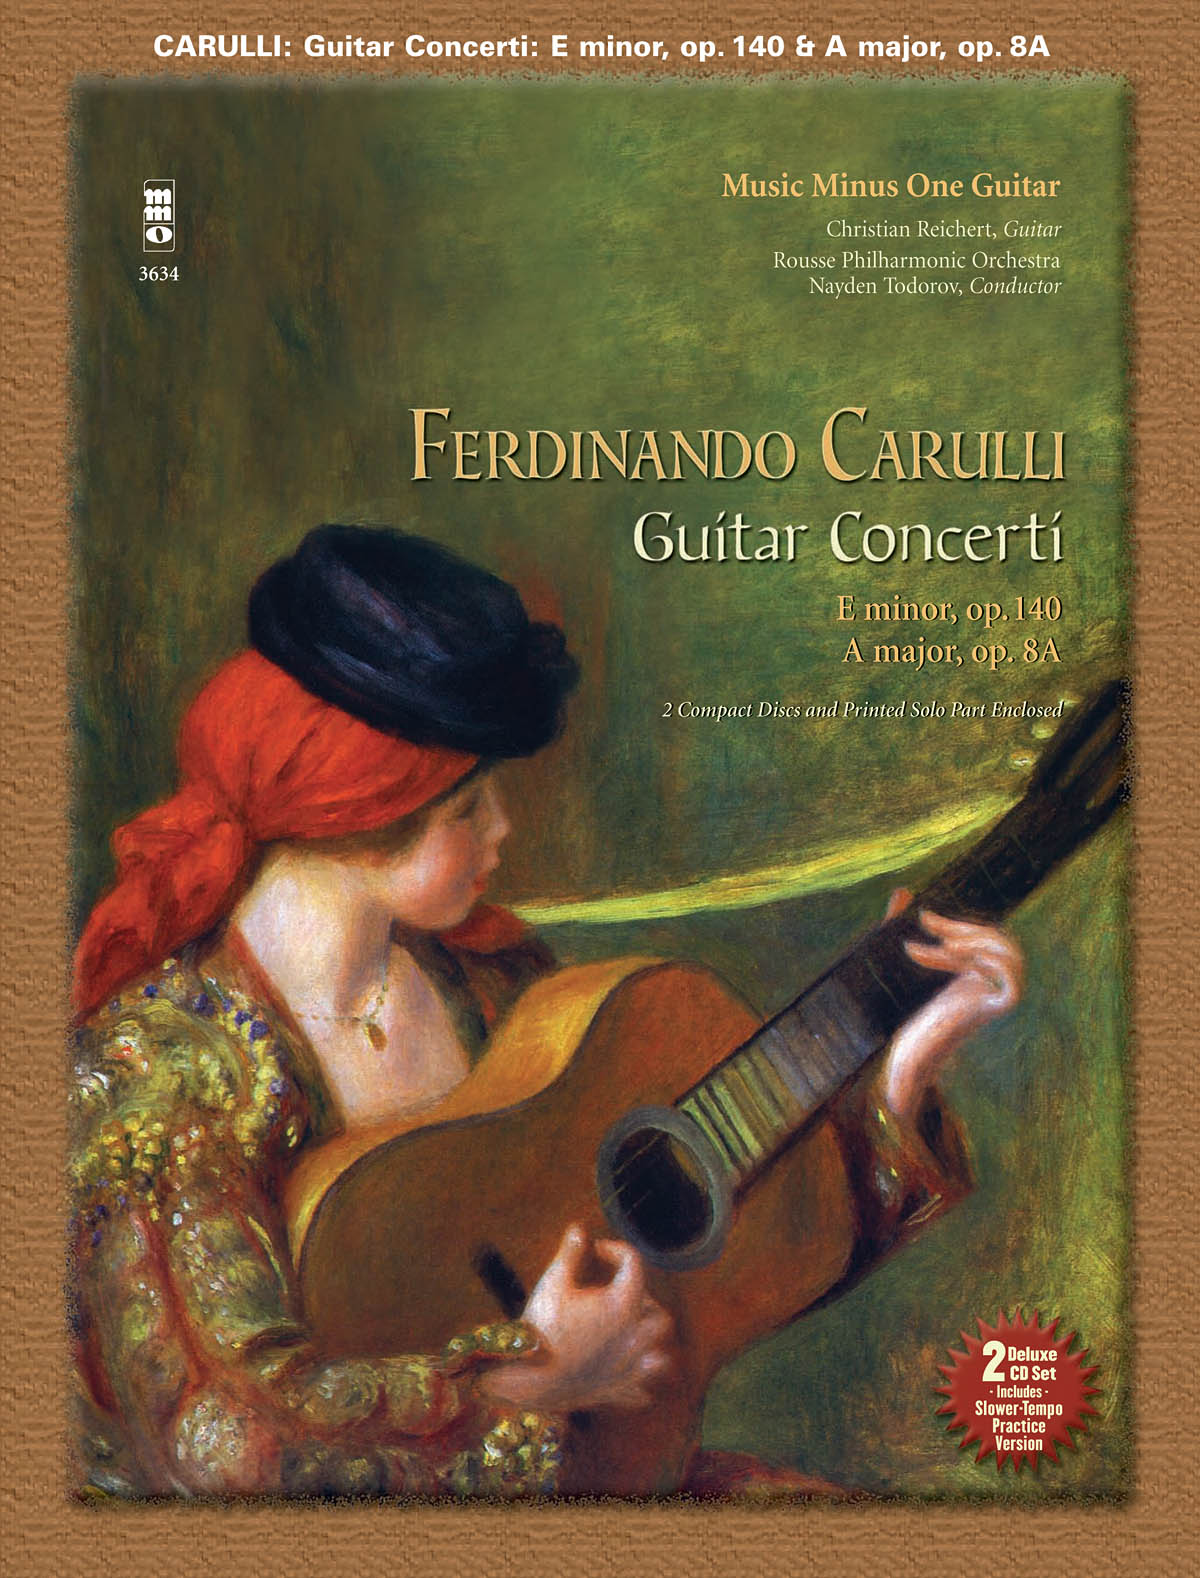 Ferdinando Carulli: Ferdinando Carulli - Two Guitar Concerti: Guitar Solo